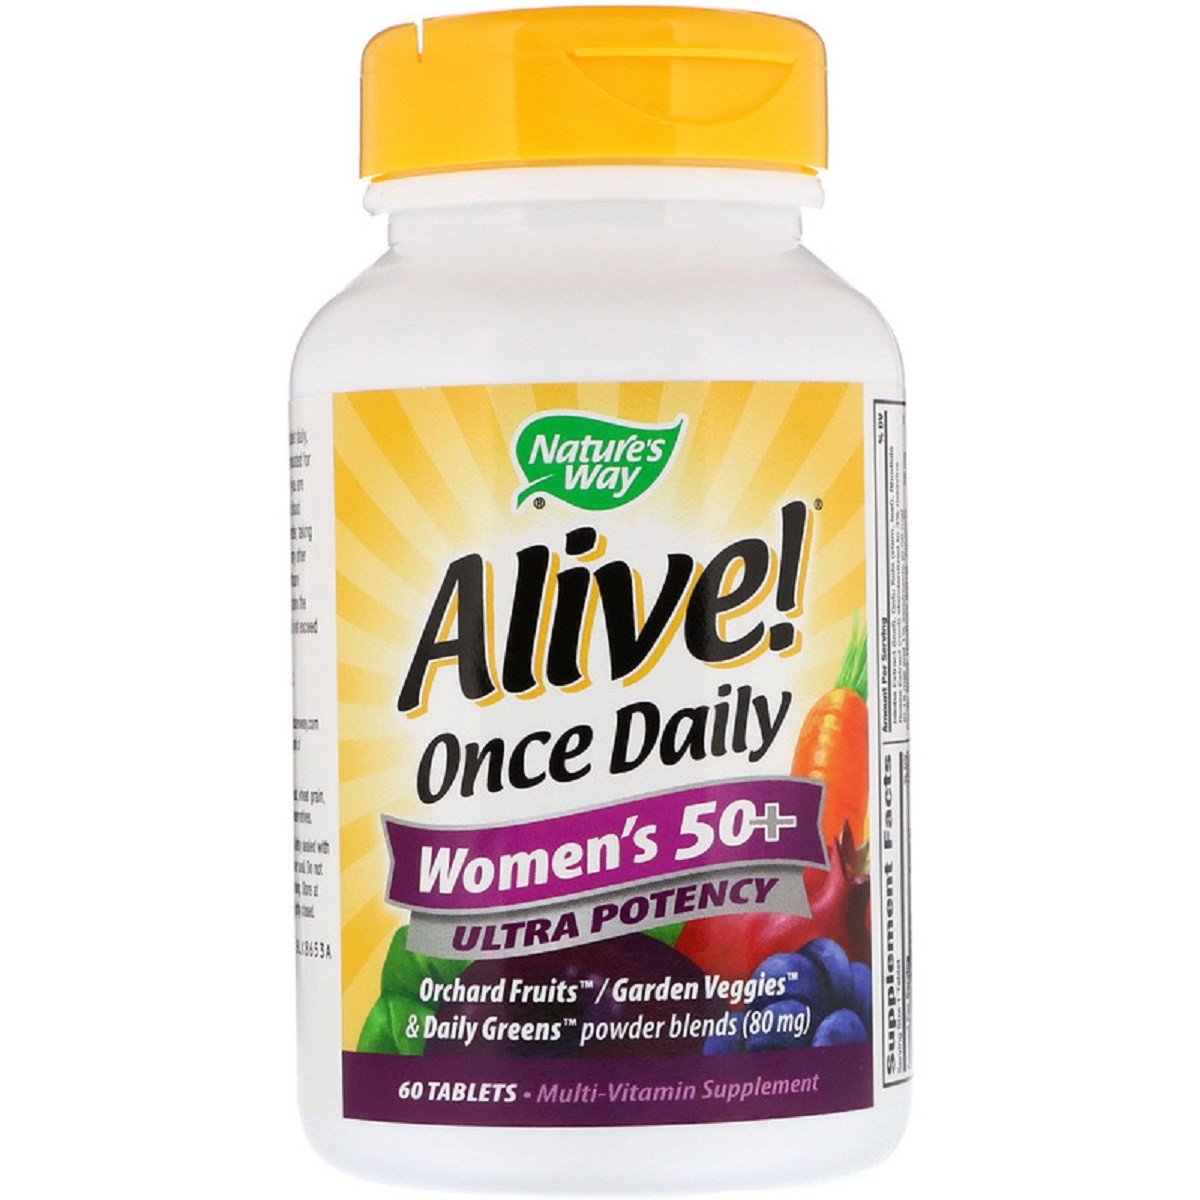 Мультивитамины Для Женщин, Alive! Once Daily, Women's 50+ Multi-Vitamin, Nature's Way 60 Таблеток,  мл, Nature's Way. Витамины и минералы. Поддержание здоровья Укрепление иммунитета 